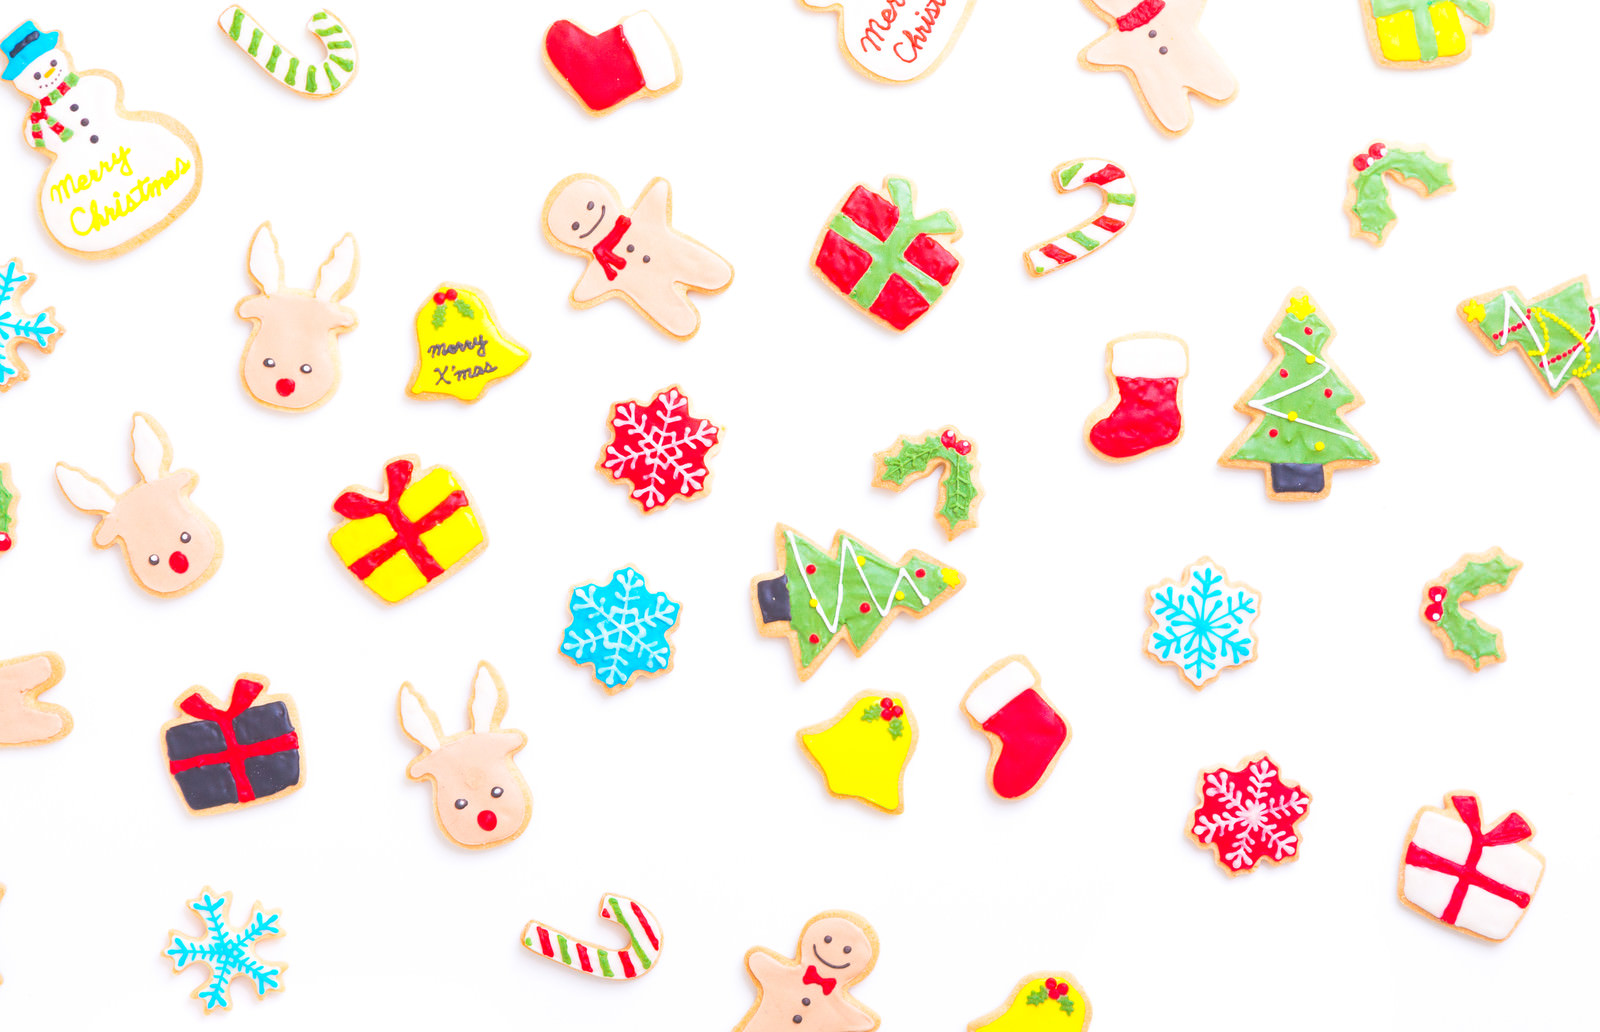 「クリスマス用手作りアイシングクッキー | フリー素材のぱくたそ」の写真